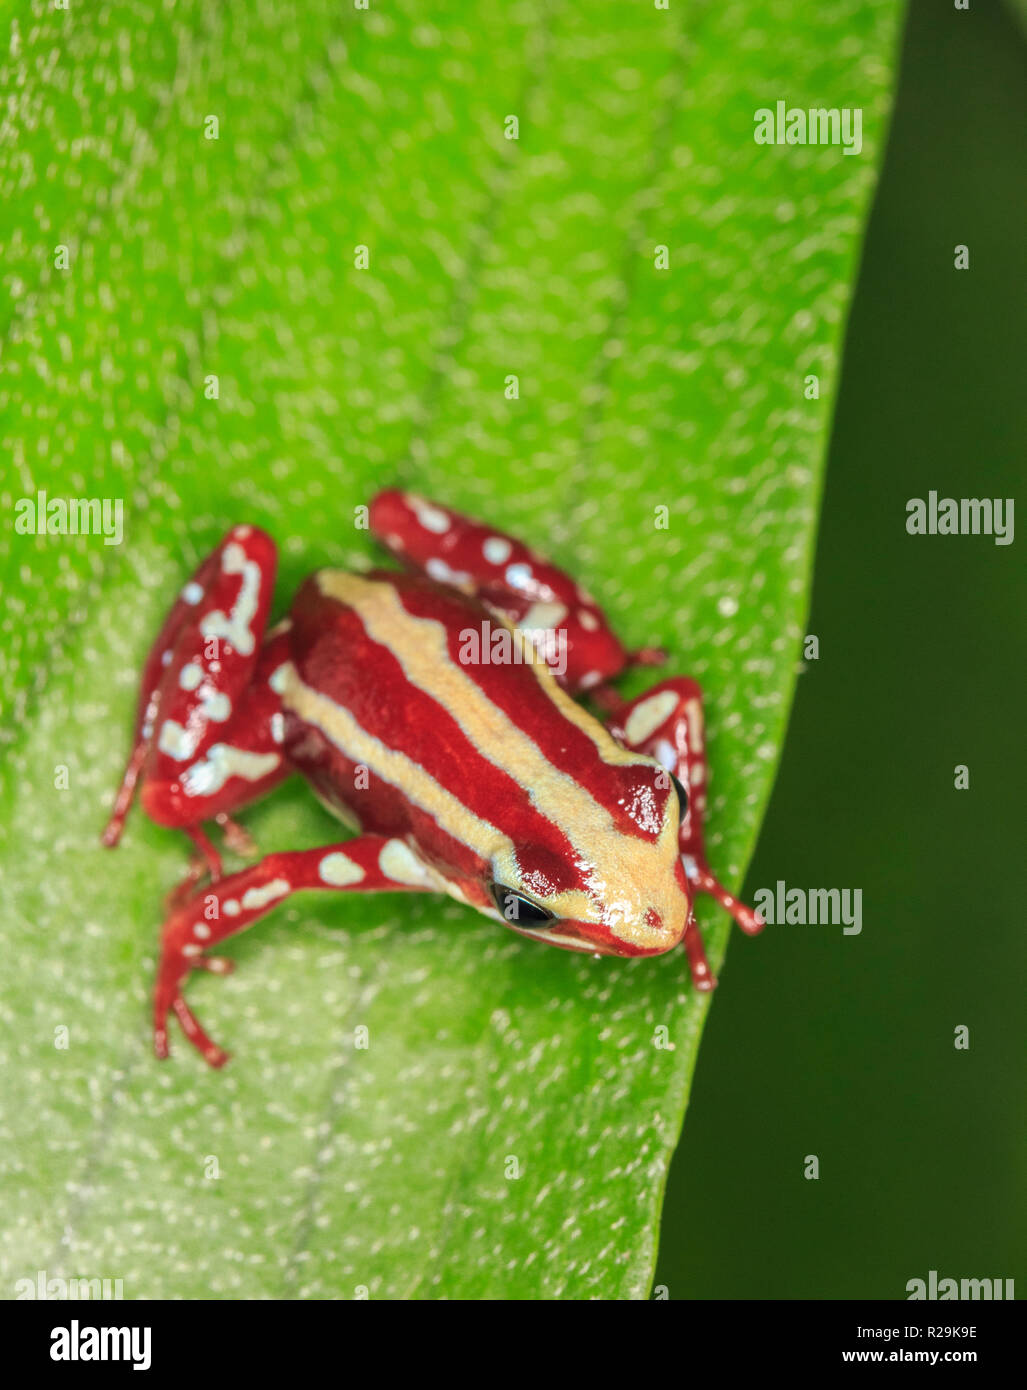 Phantasmal poison frog or phantasmal poison-arrow frog (Epipedobates tricolor)  on leaf Stock Photo